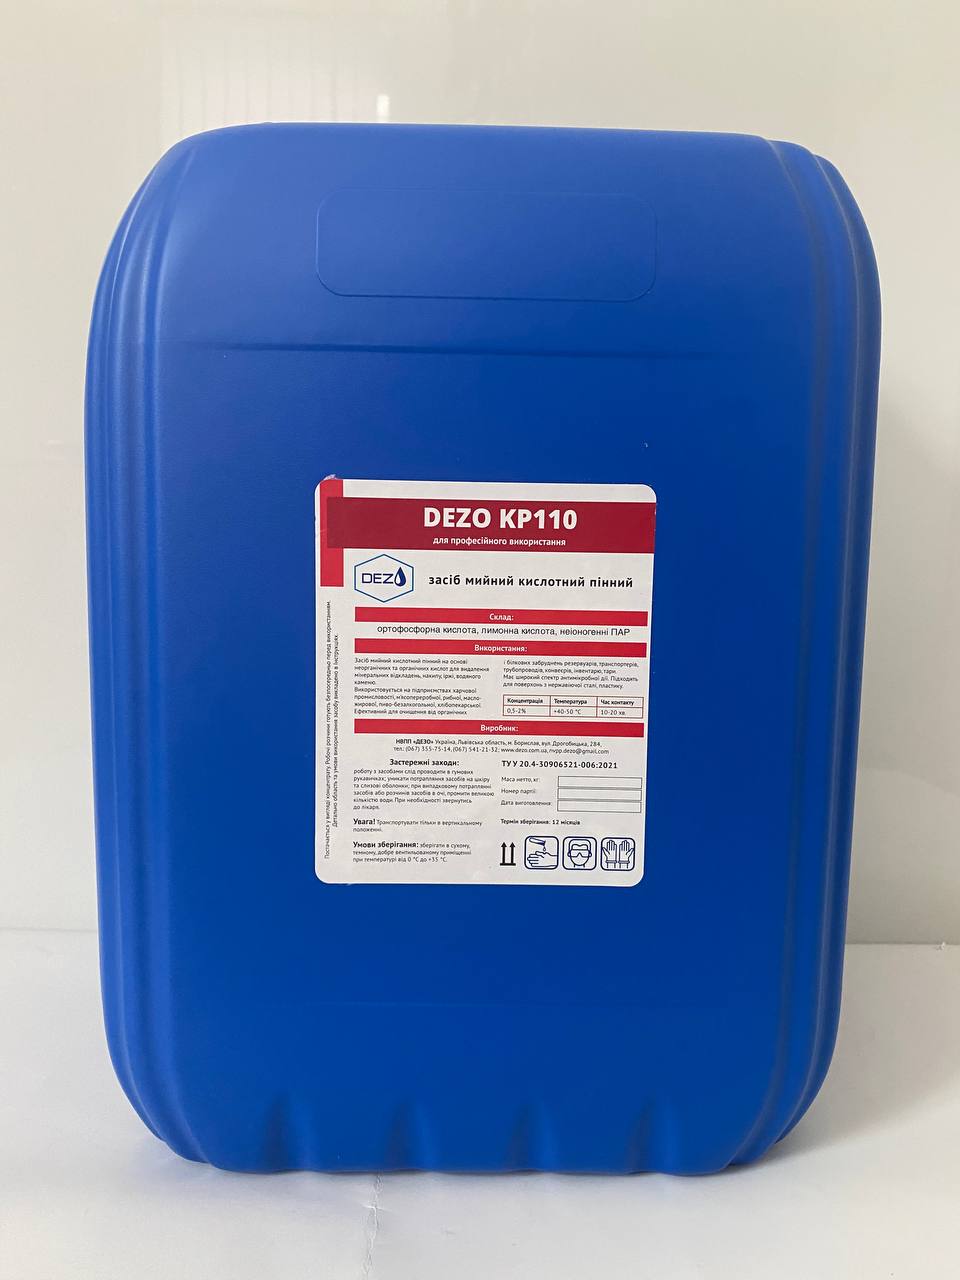 Засіб мийний кислотний пінний DEZO KP110, 24 кг